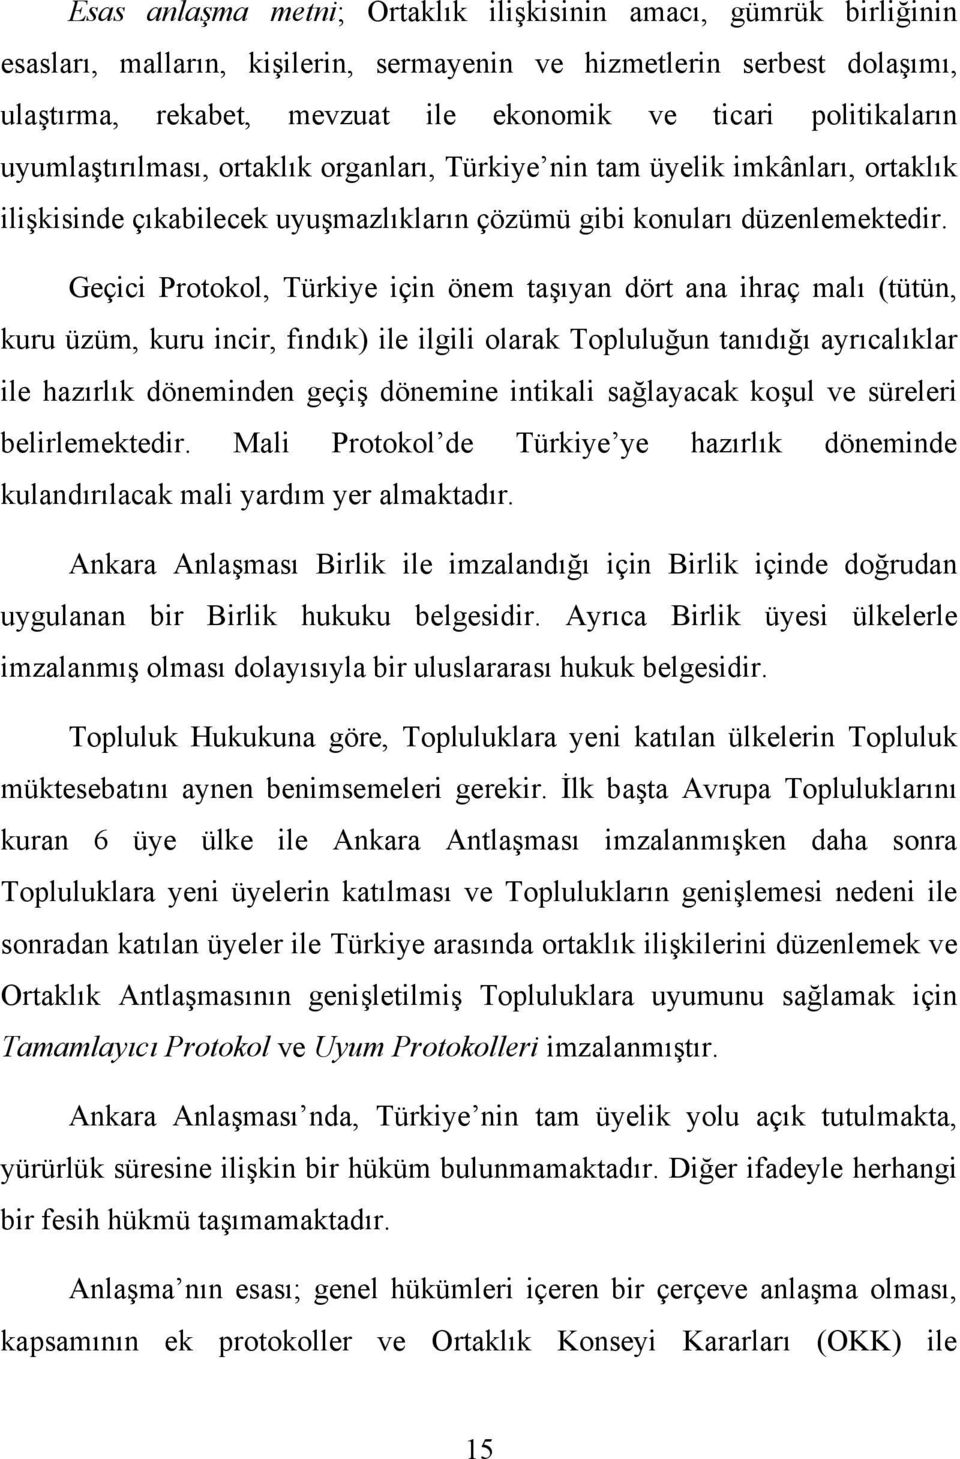 Geçici Protokol, Türkiye için önem taşıyan dört ana ihraç malı (tütün, kuru üzüm, kuru incir, fındık) ile ilgili olarak Topluluğun tanıdığı ayrıcalıklar ile hazırlık döneminden geçiş dönemine